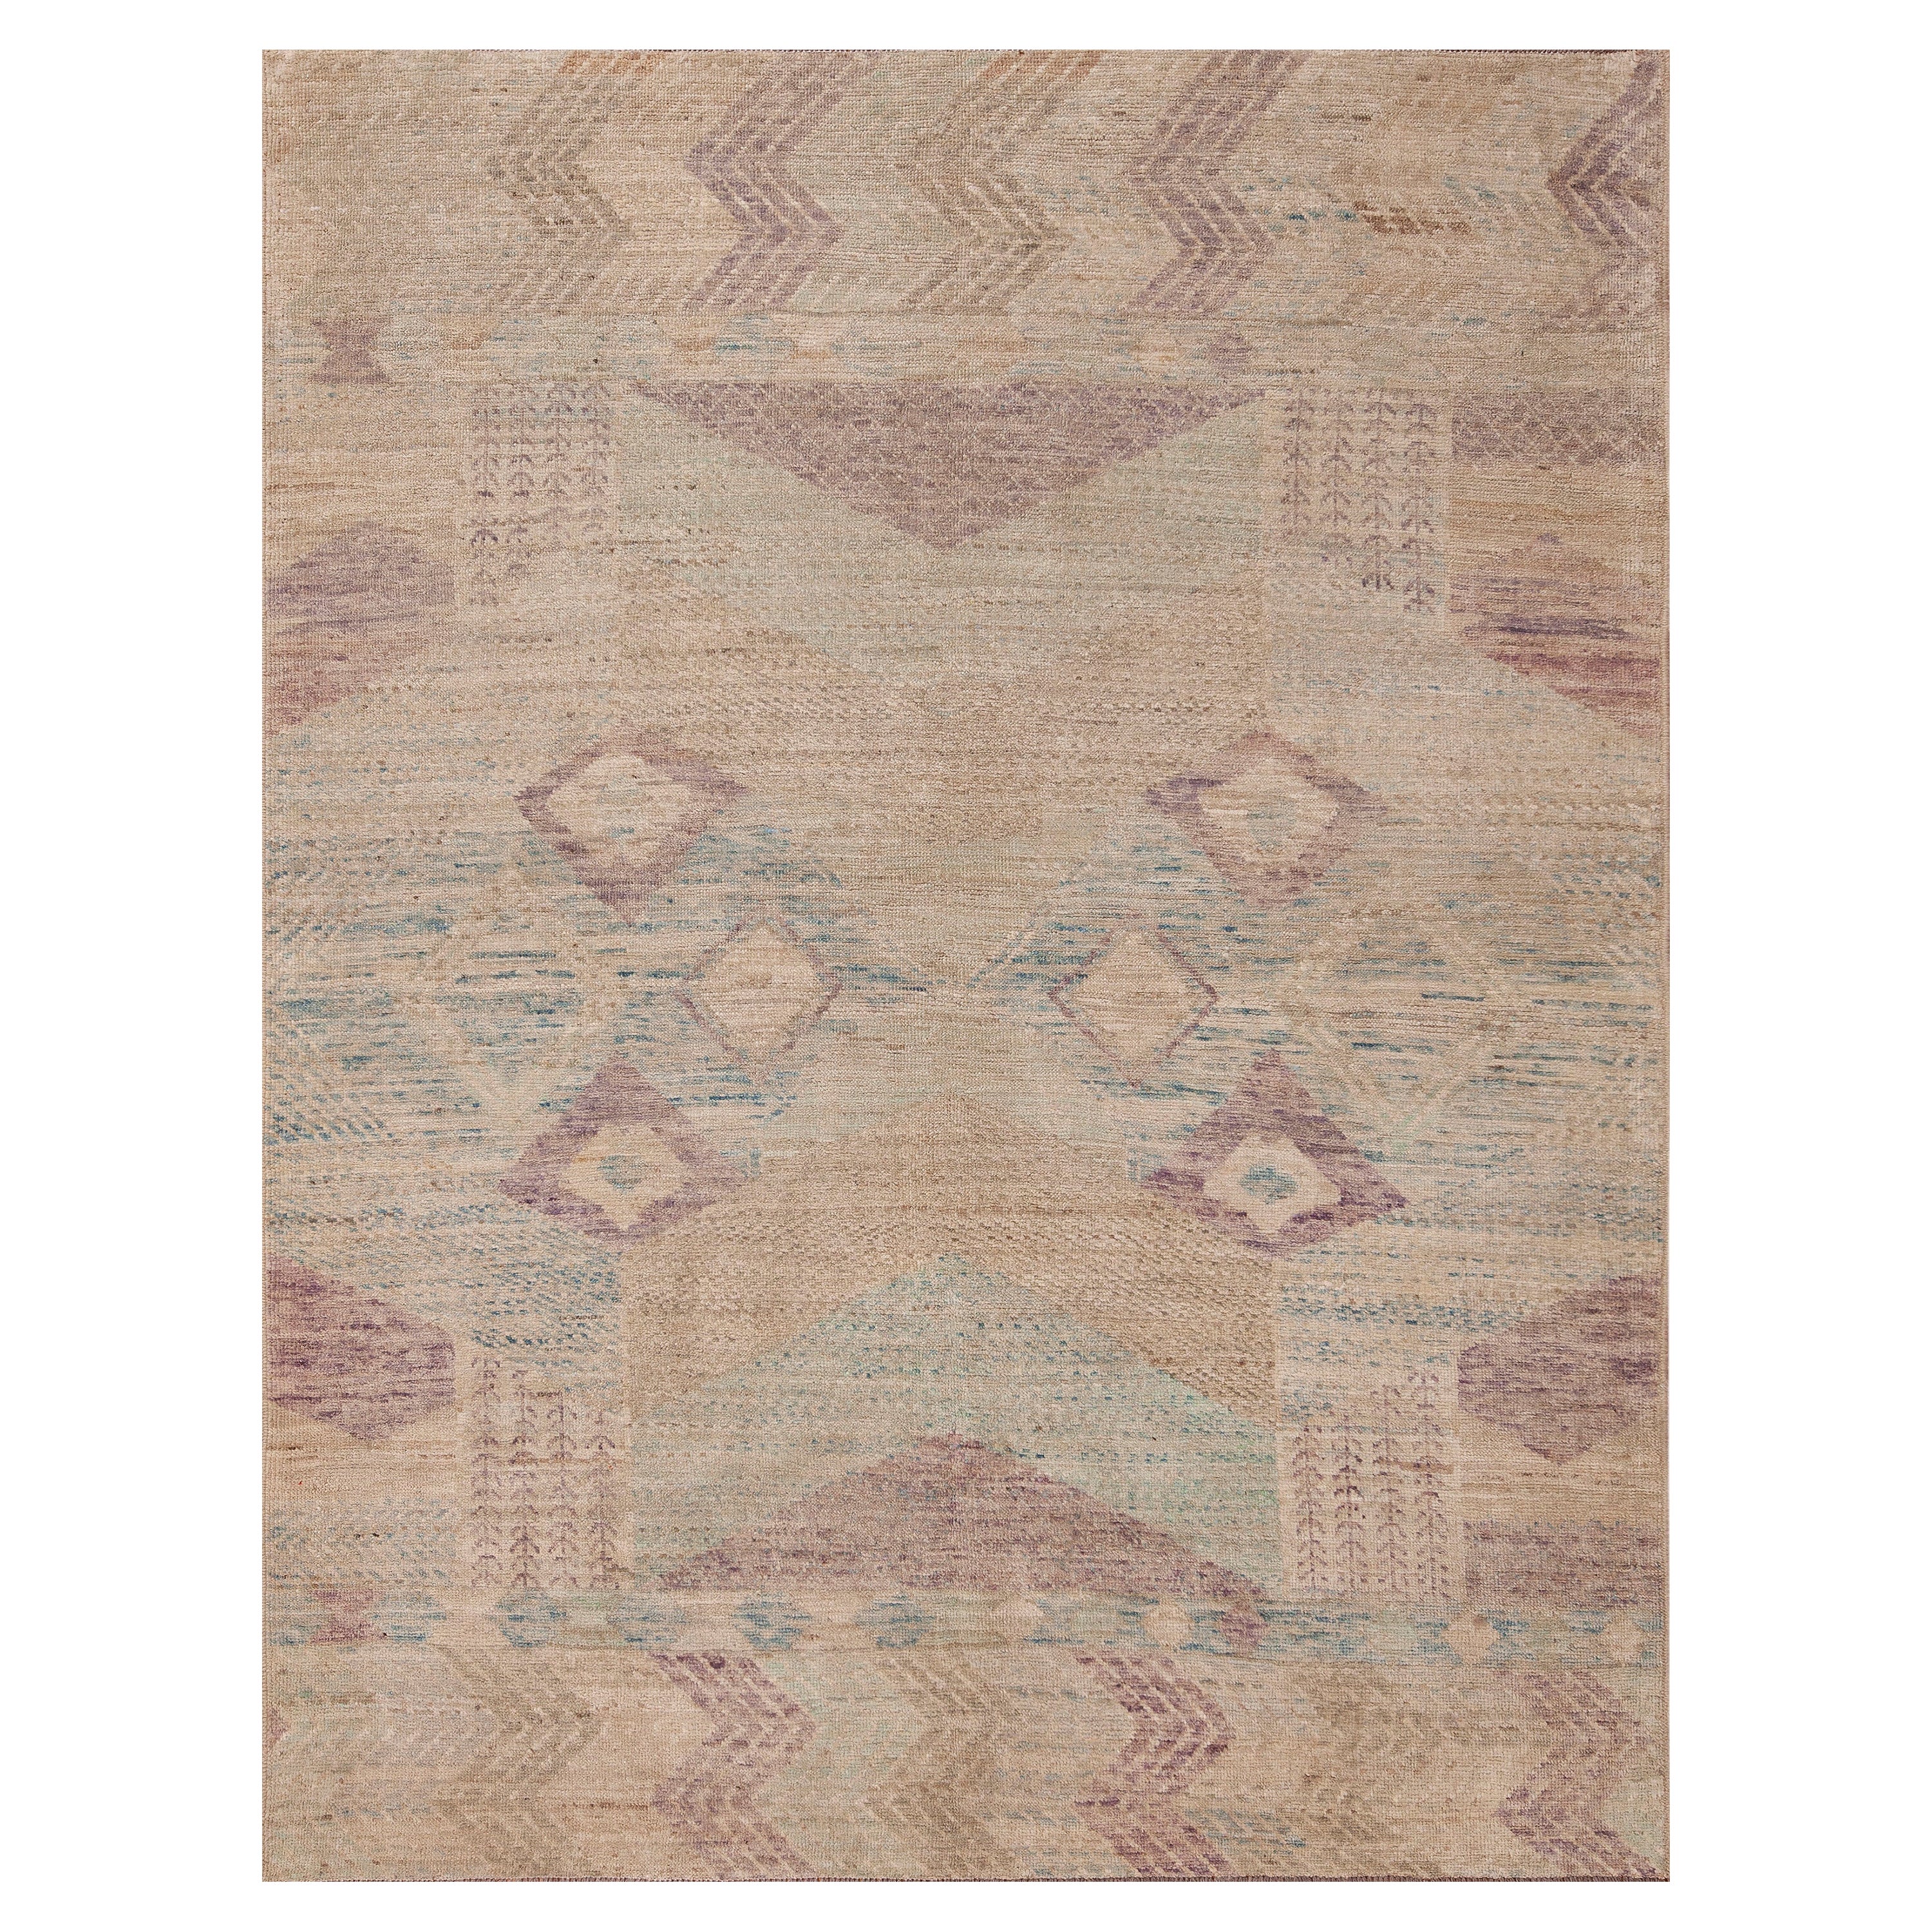 Moderner Teppich aus Wolle der Nazmiyal Kollektion in weicher Farbe, Nomadic Design, 6'1" x 7'8"